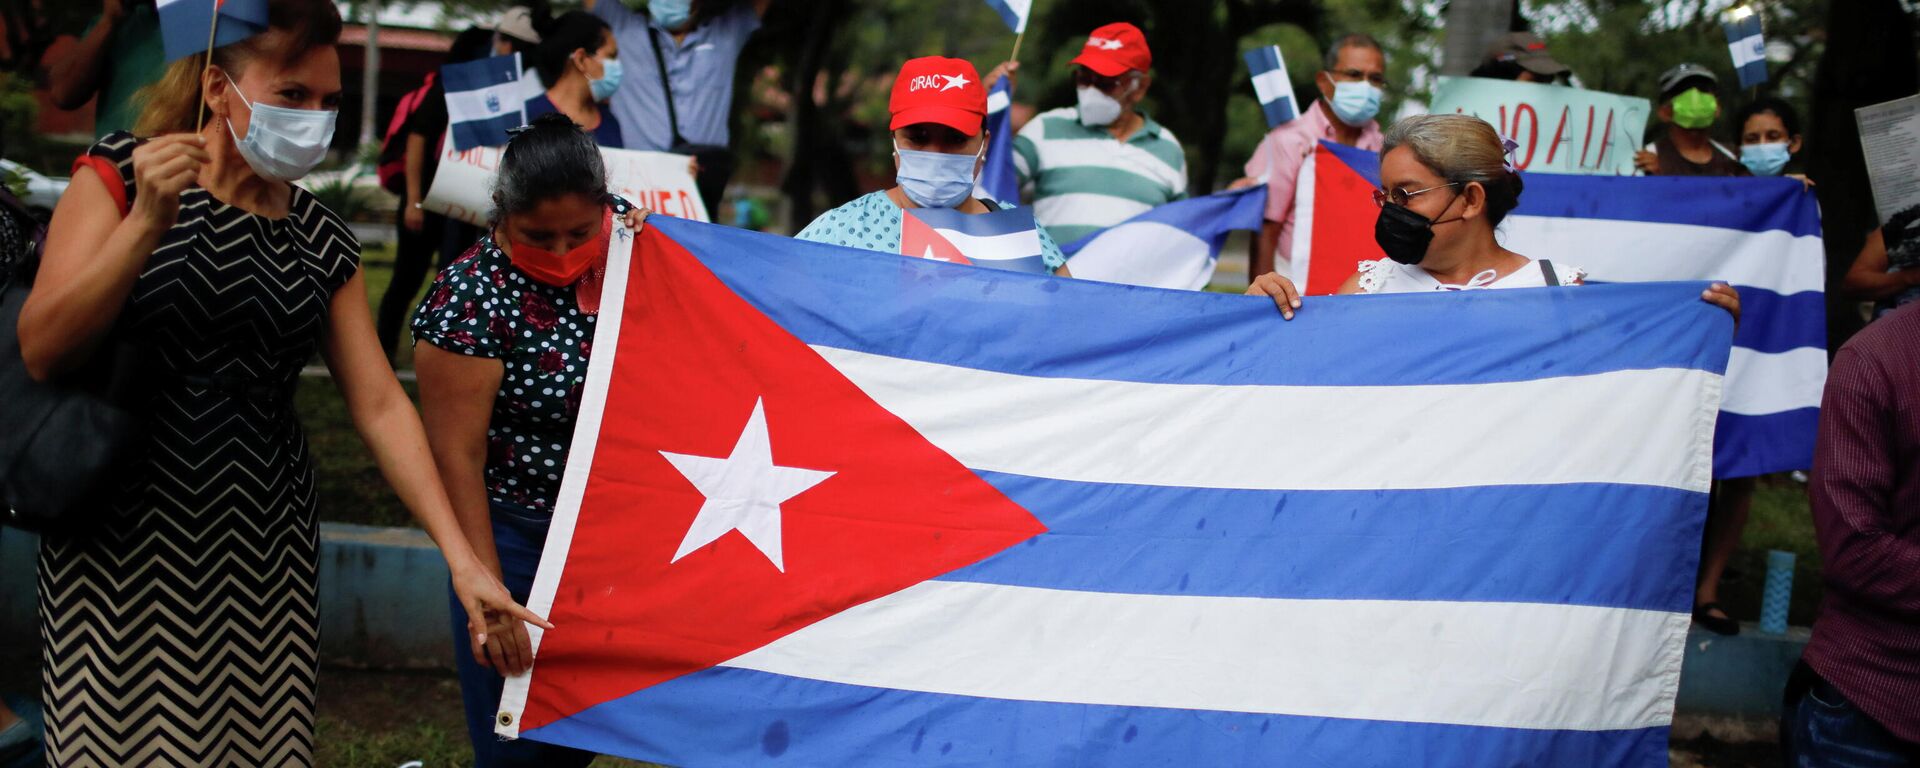 Bandera de Cuba durante las protestas - Sputnik Mundo, 1920, 13.07.2021